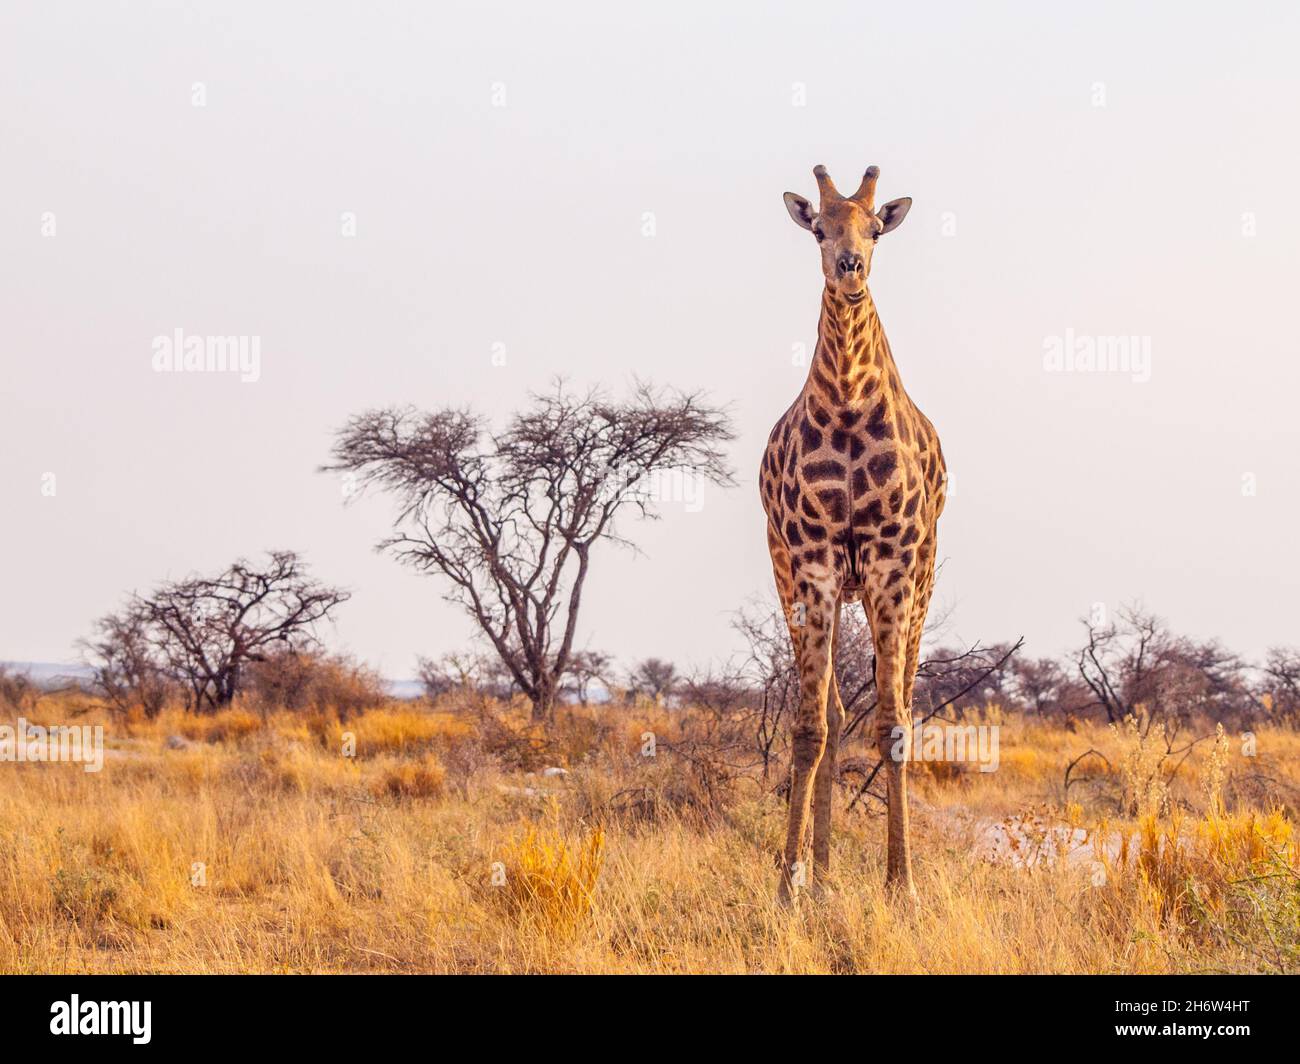 Cute giraffe in african savanna Stock Photo